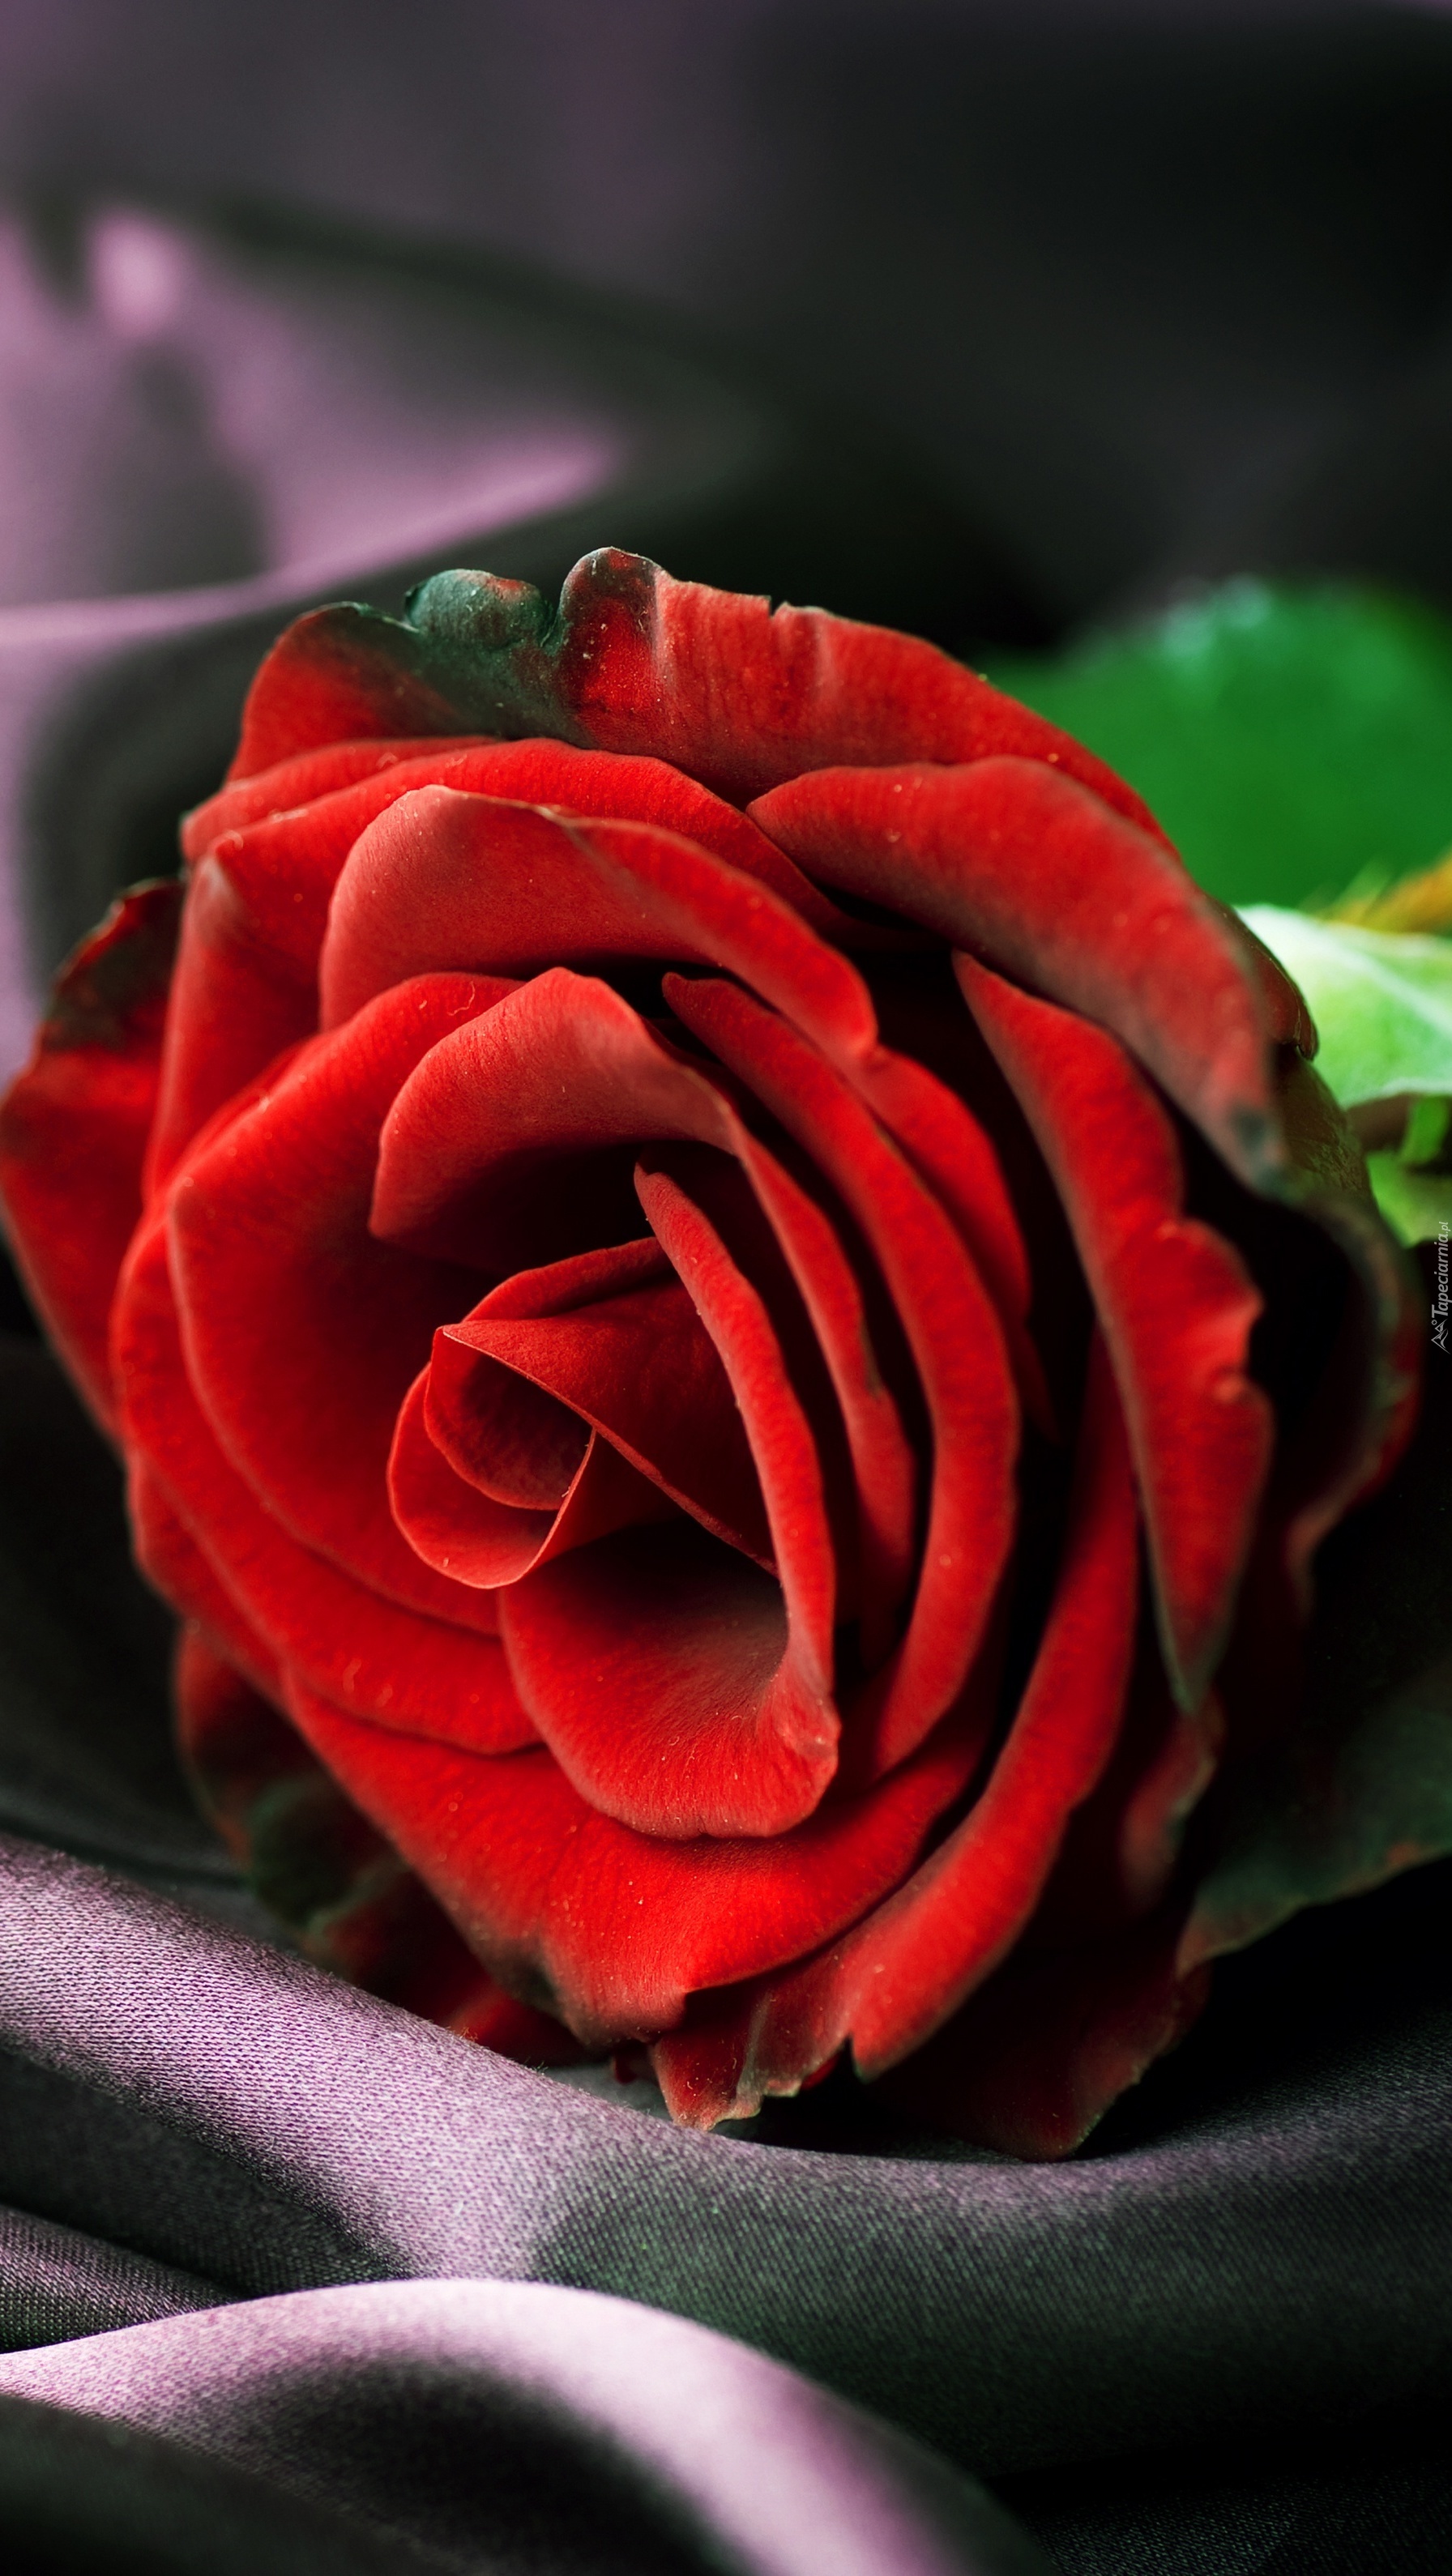 Kwiat róży o czerwonych płatkach